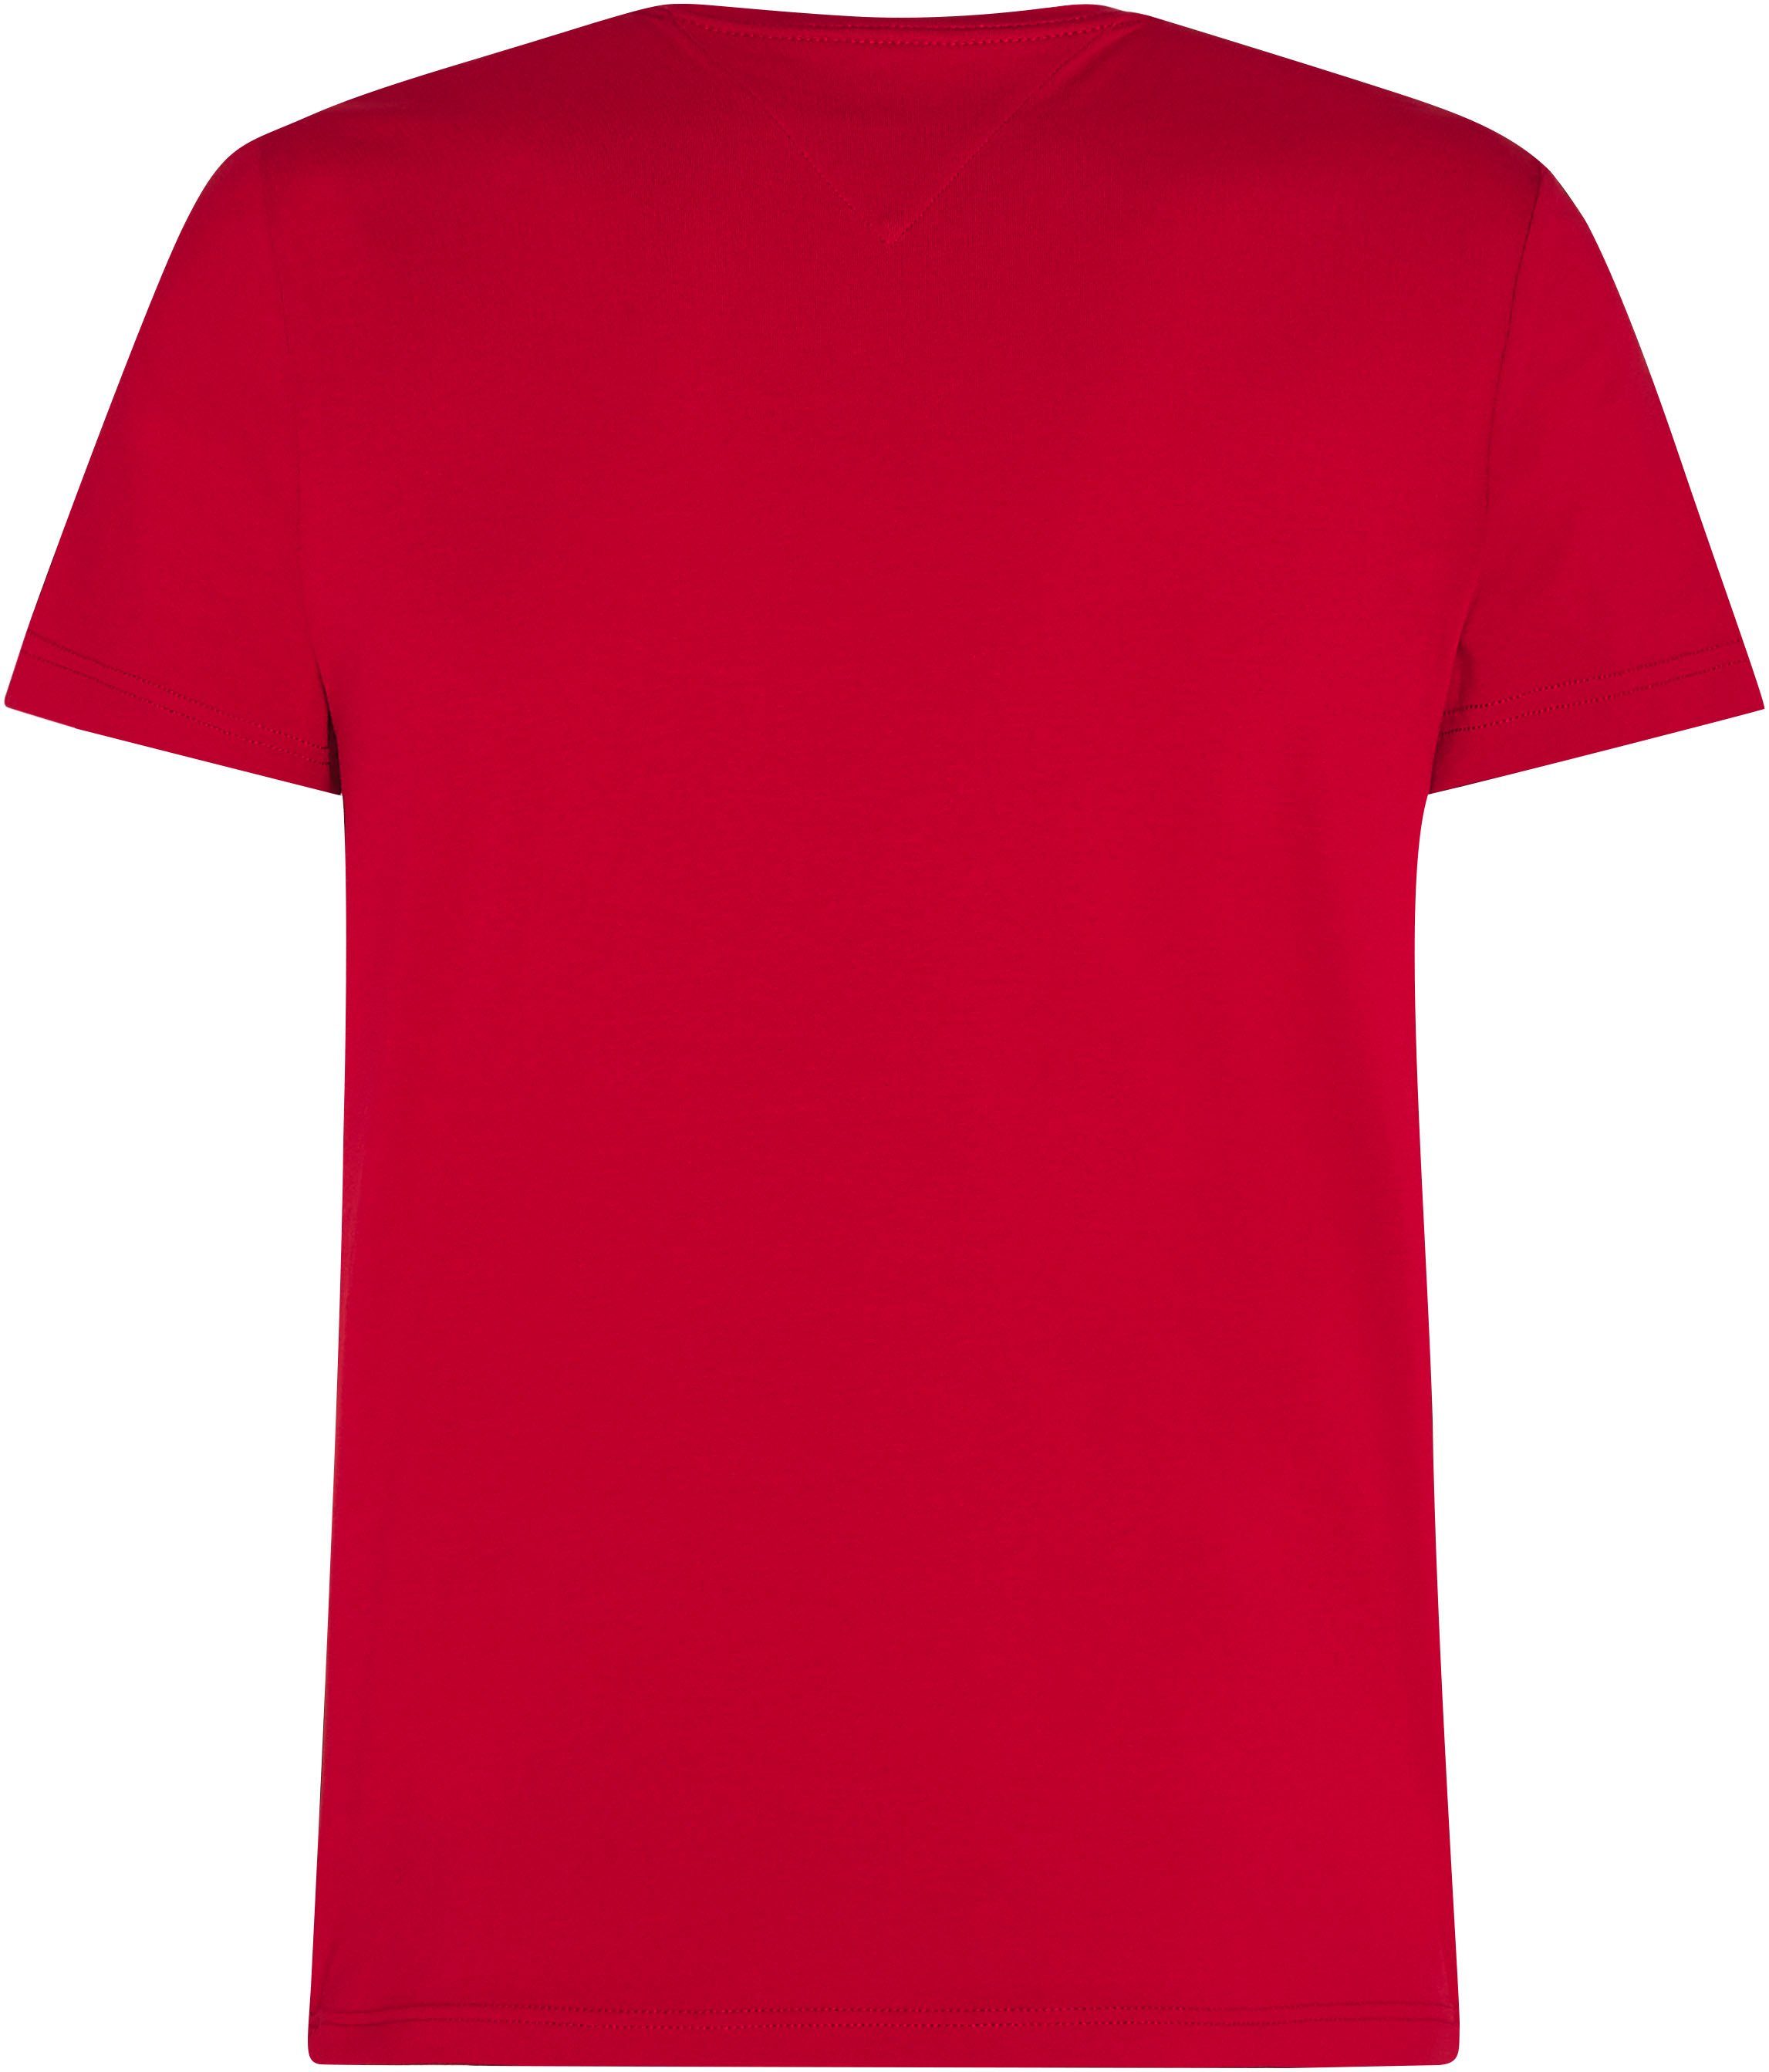 STRETCH T-Shirt FIT Arizona TEE Hilfiger SLIM Red Tommy